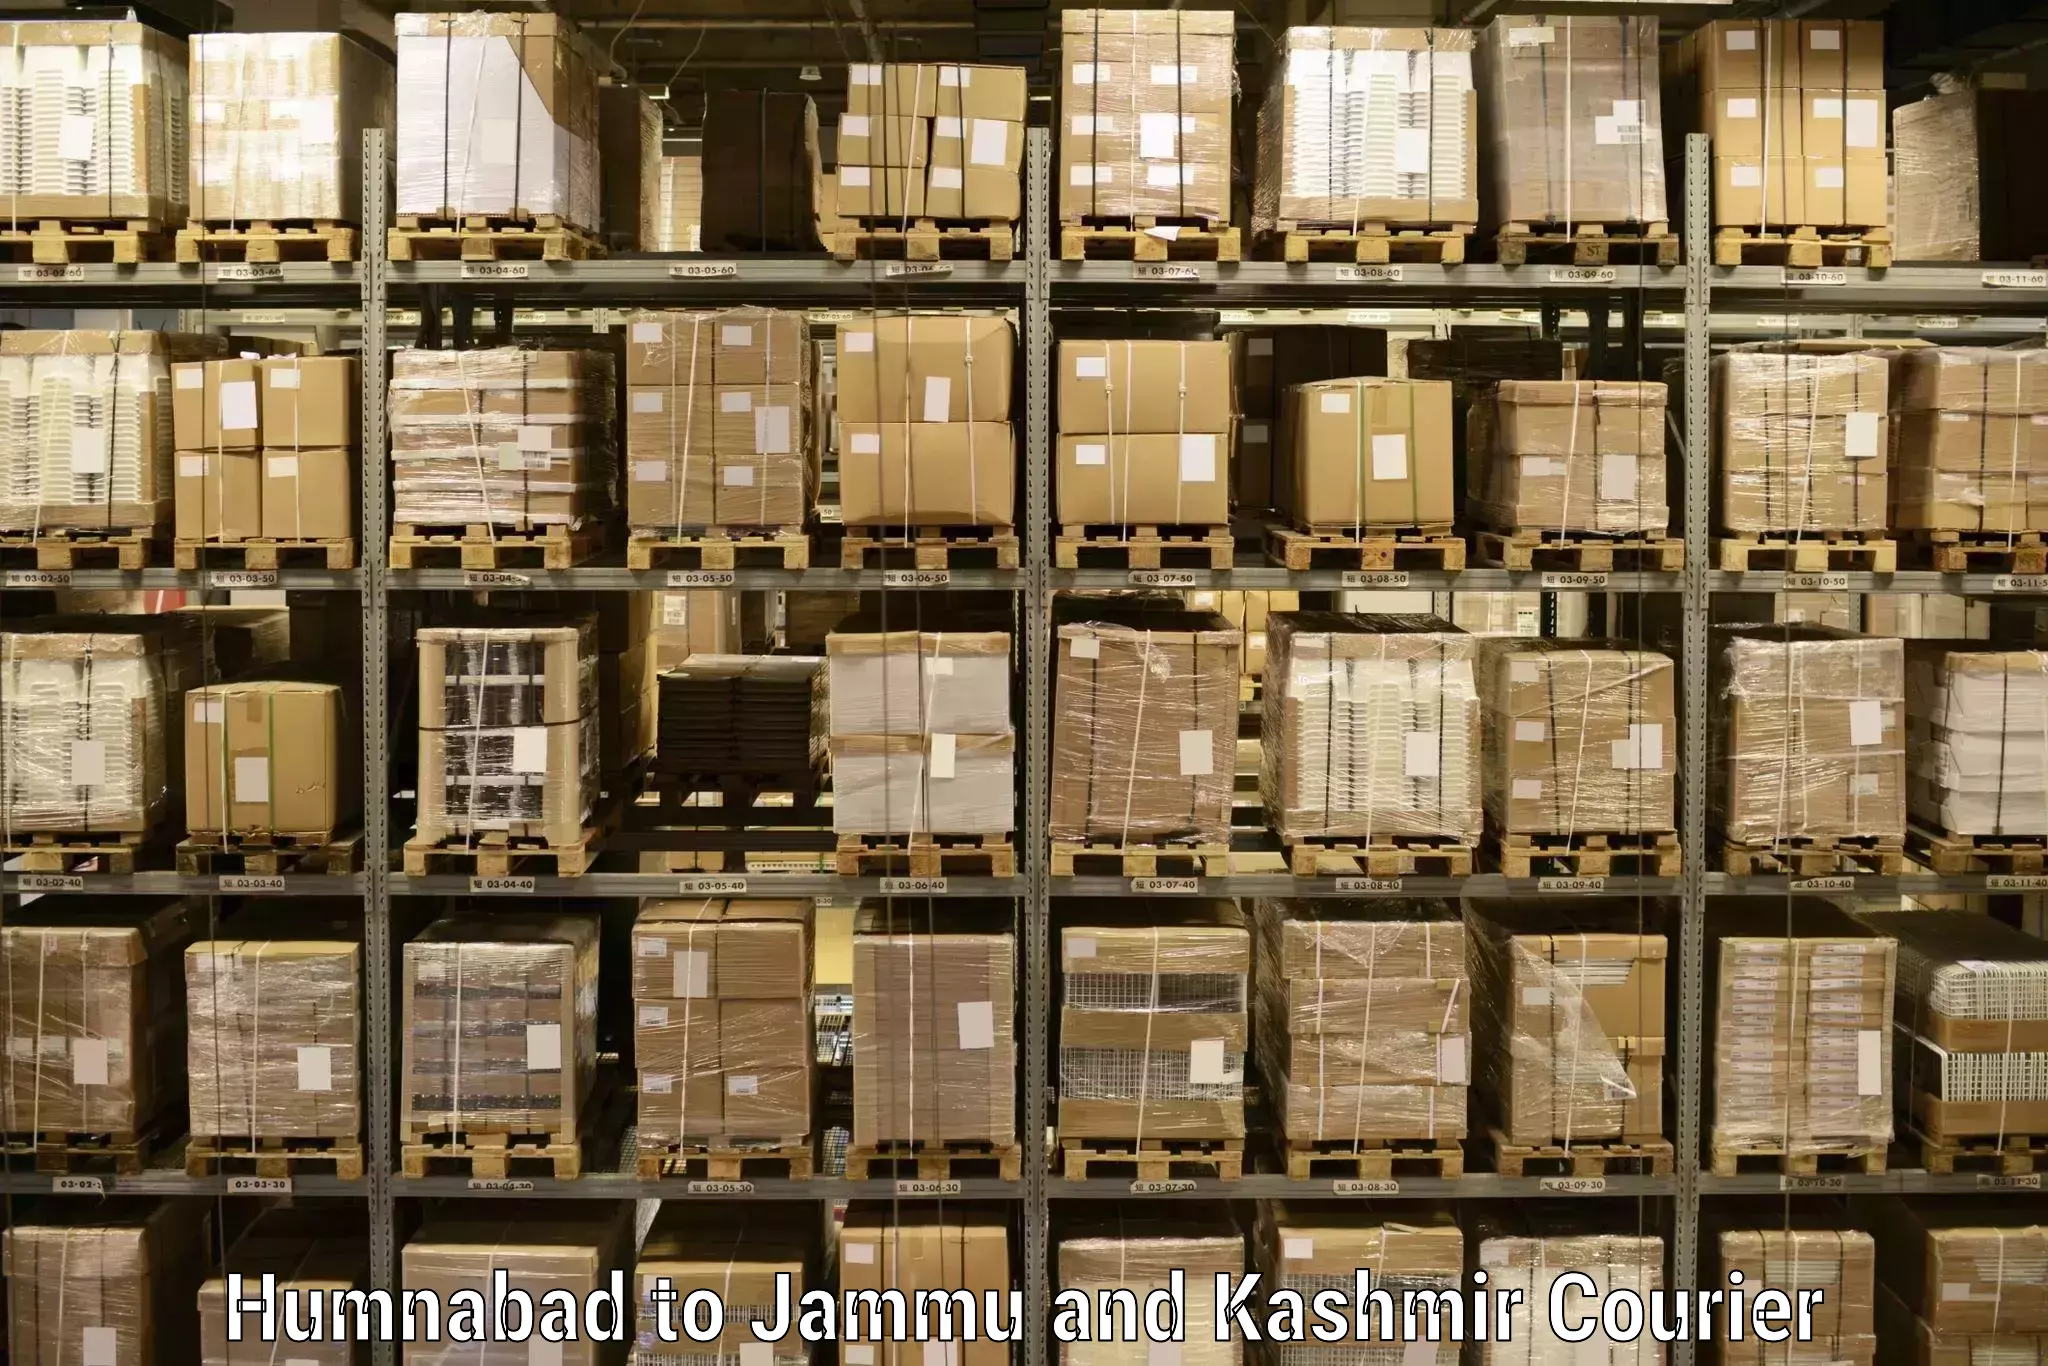 Heavy parcel delivery in Humnabad to Hiranagar